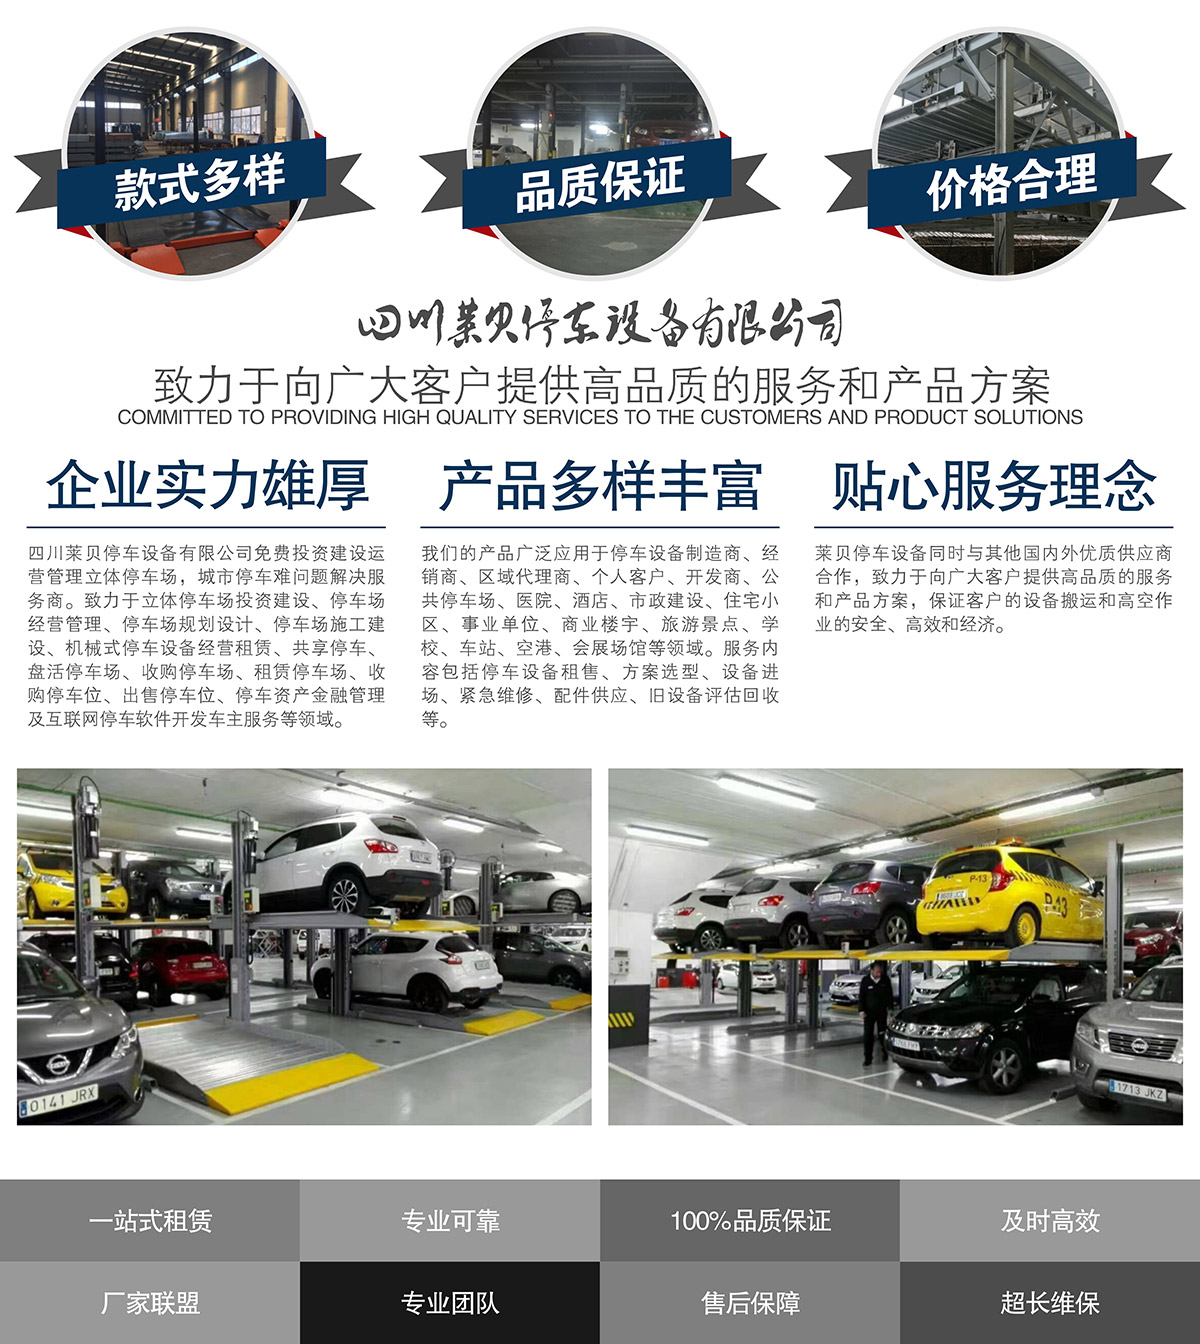 贵州莱贝机械停车位投融资建设提供高品质的服务和产品方案.jpg